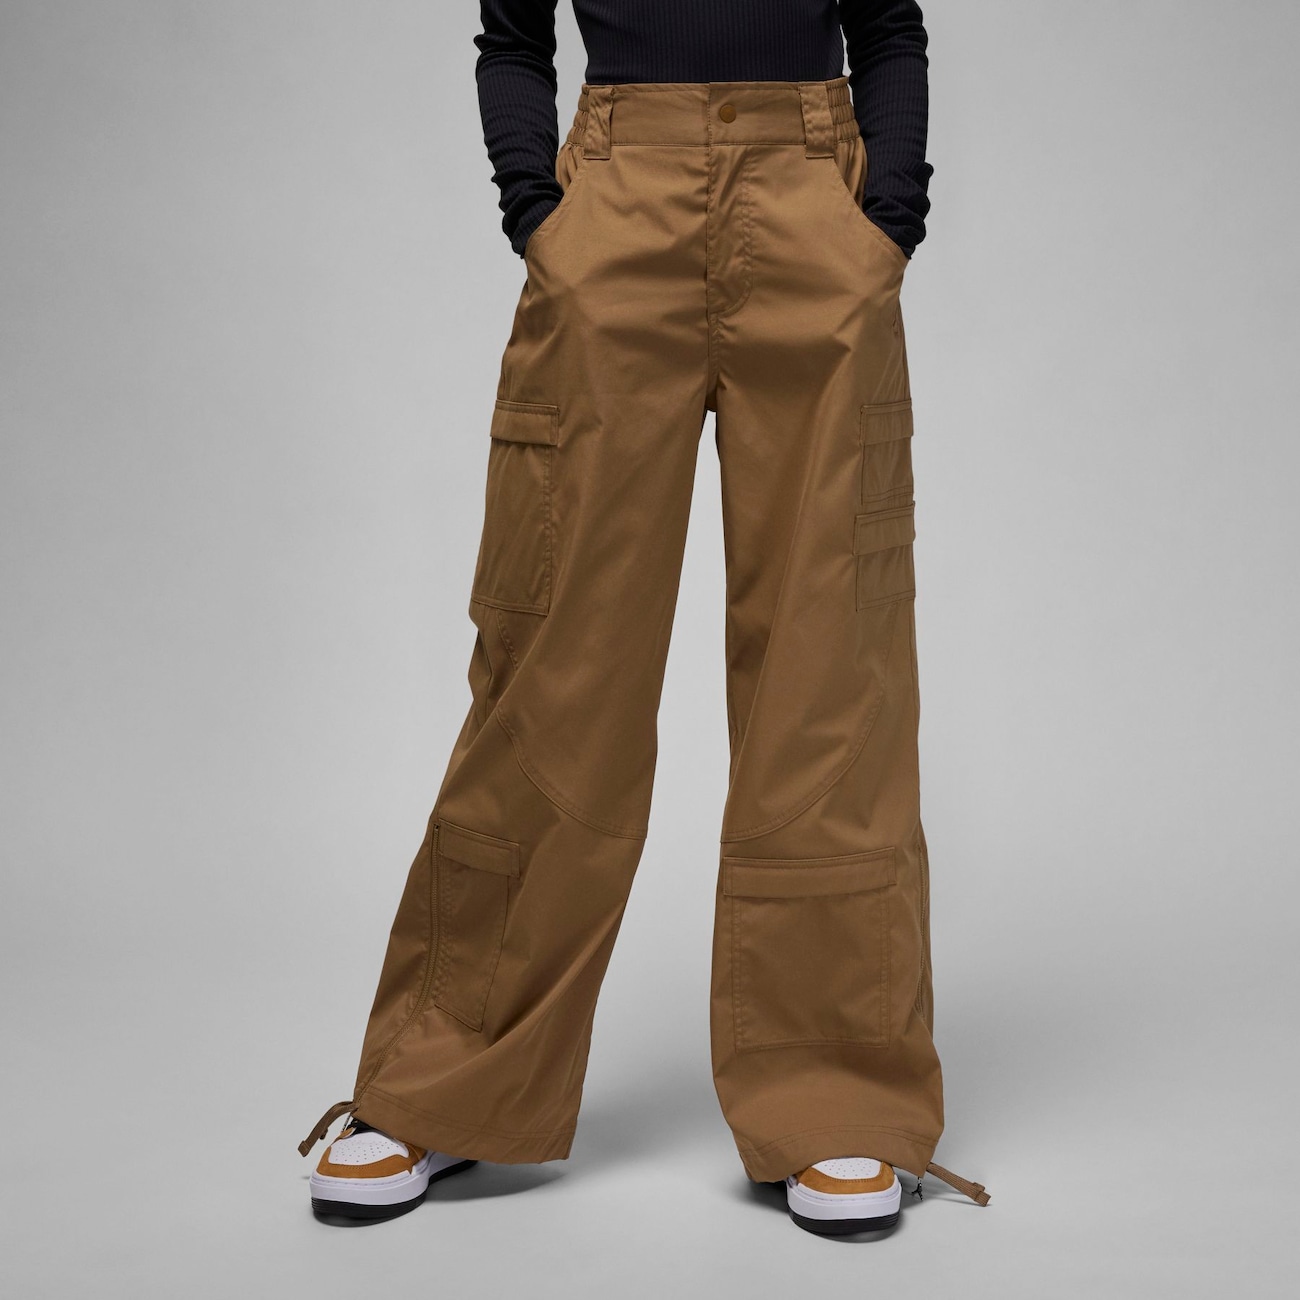 calca jeans feminina jordan - Compre calca jeans feminina jordan